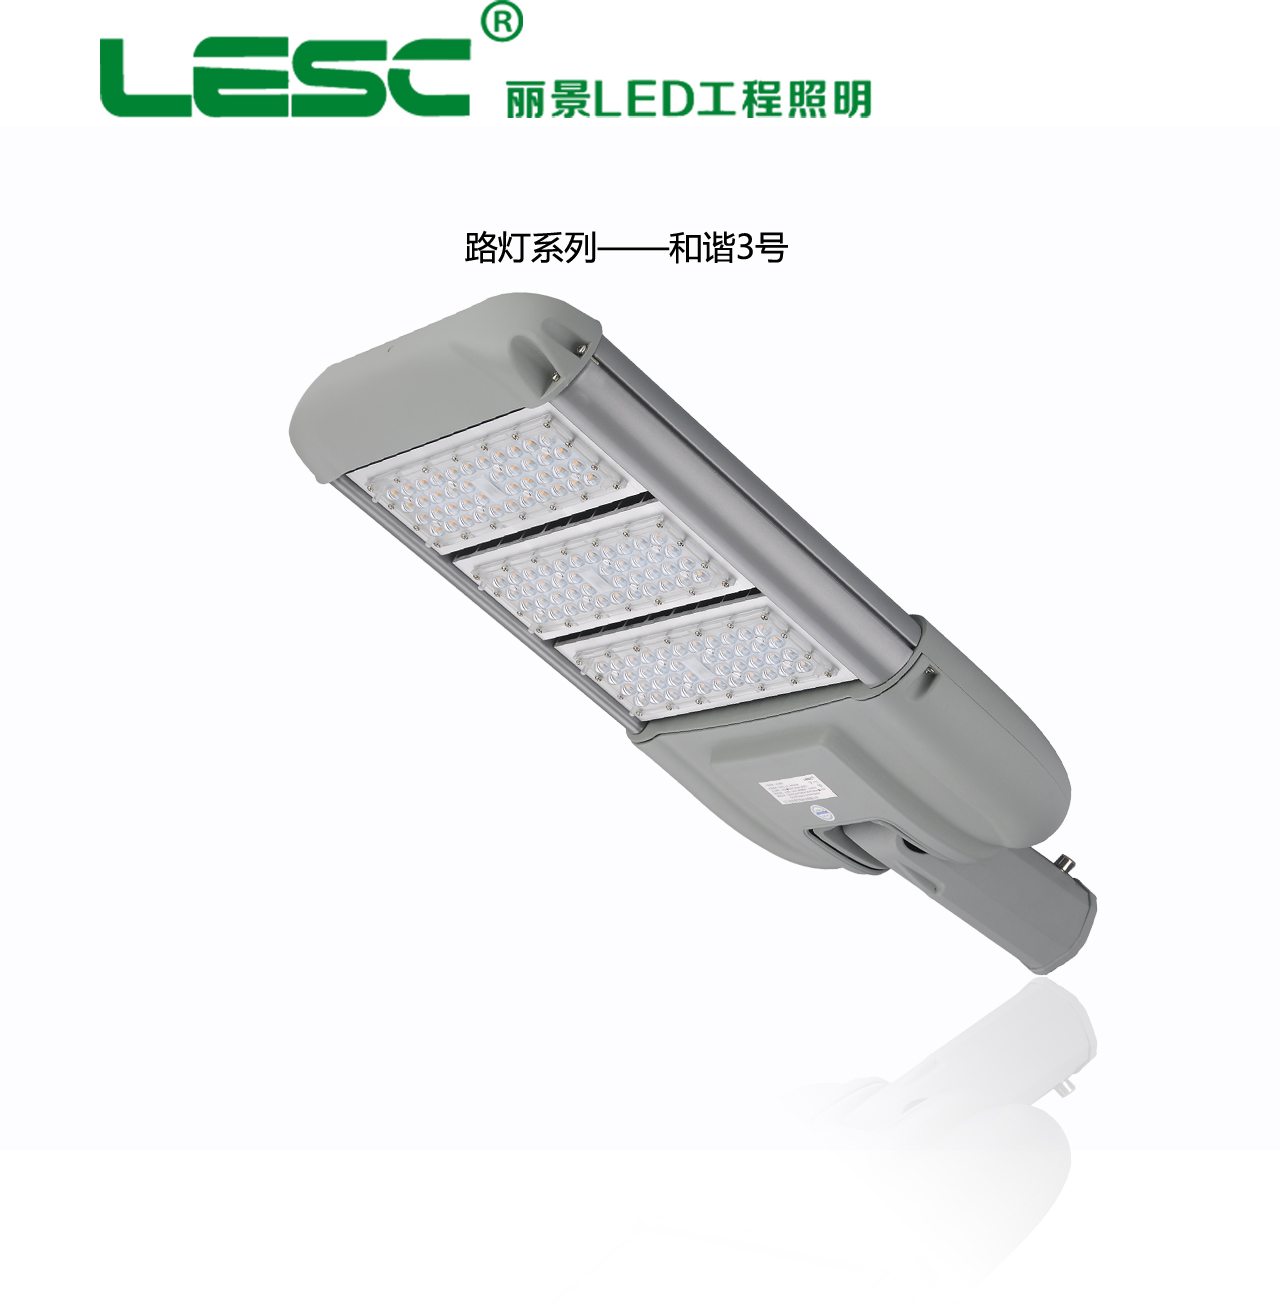 供应和谐三号LED路灯灯头厂家供应大功率LED路灯照明热销新型节能环保路灯系列图片